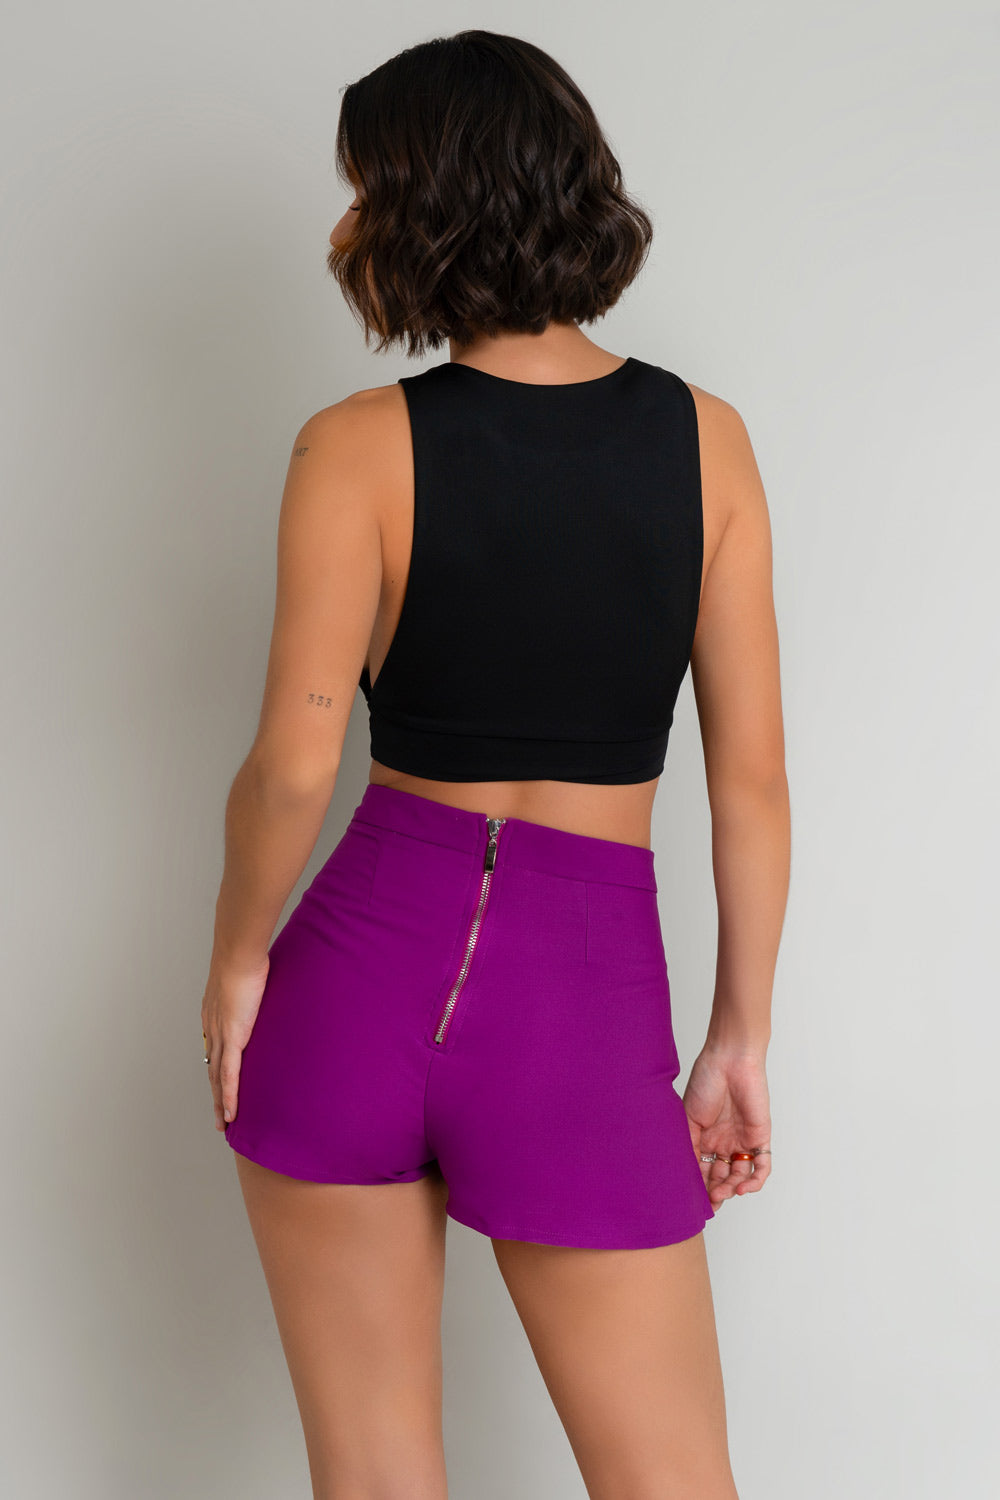 Falda short asimétrico de cintura alta, pretina y cierre posterior con cremallera visible.